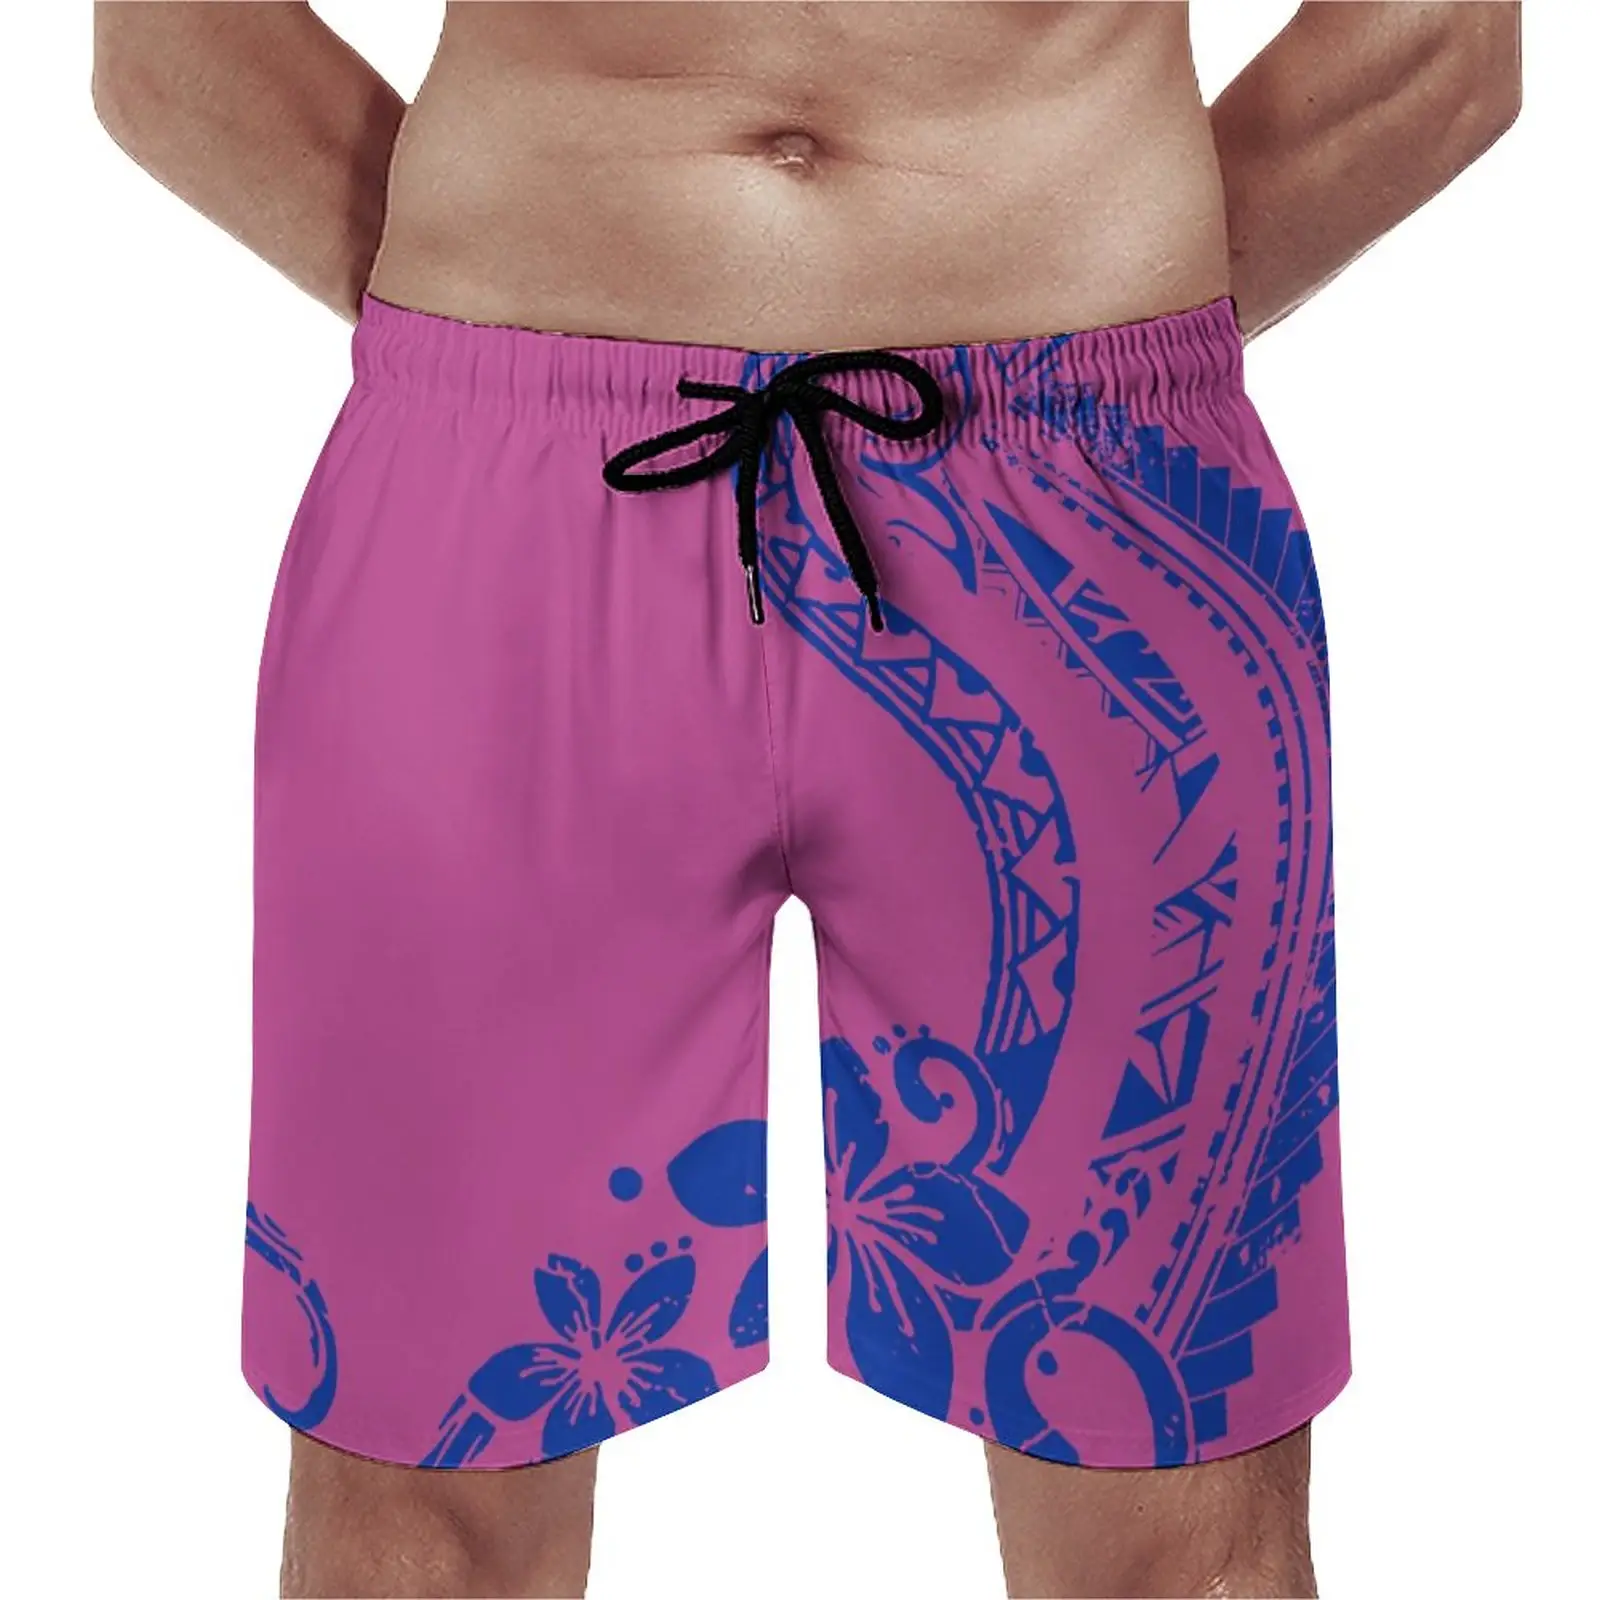 Pantaloncini da uomo di personalizzazione professionale Totem tribali polinesiani con fiori di ibisco firmati pantaloncini sportivi ad asciugatura rapida pantaloncini caldi